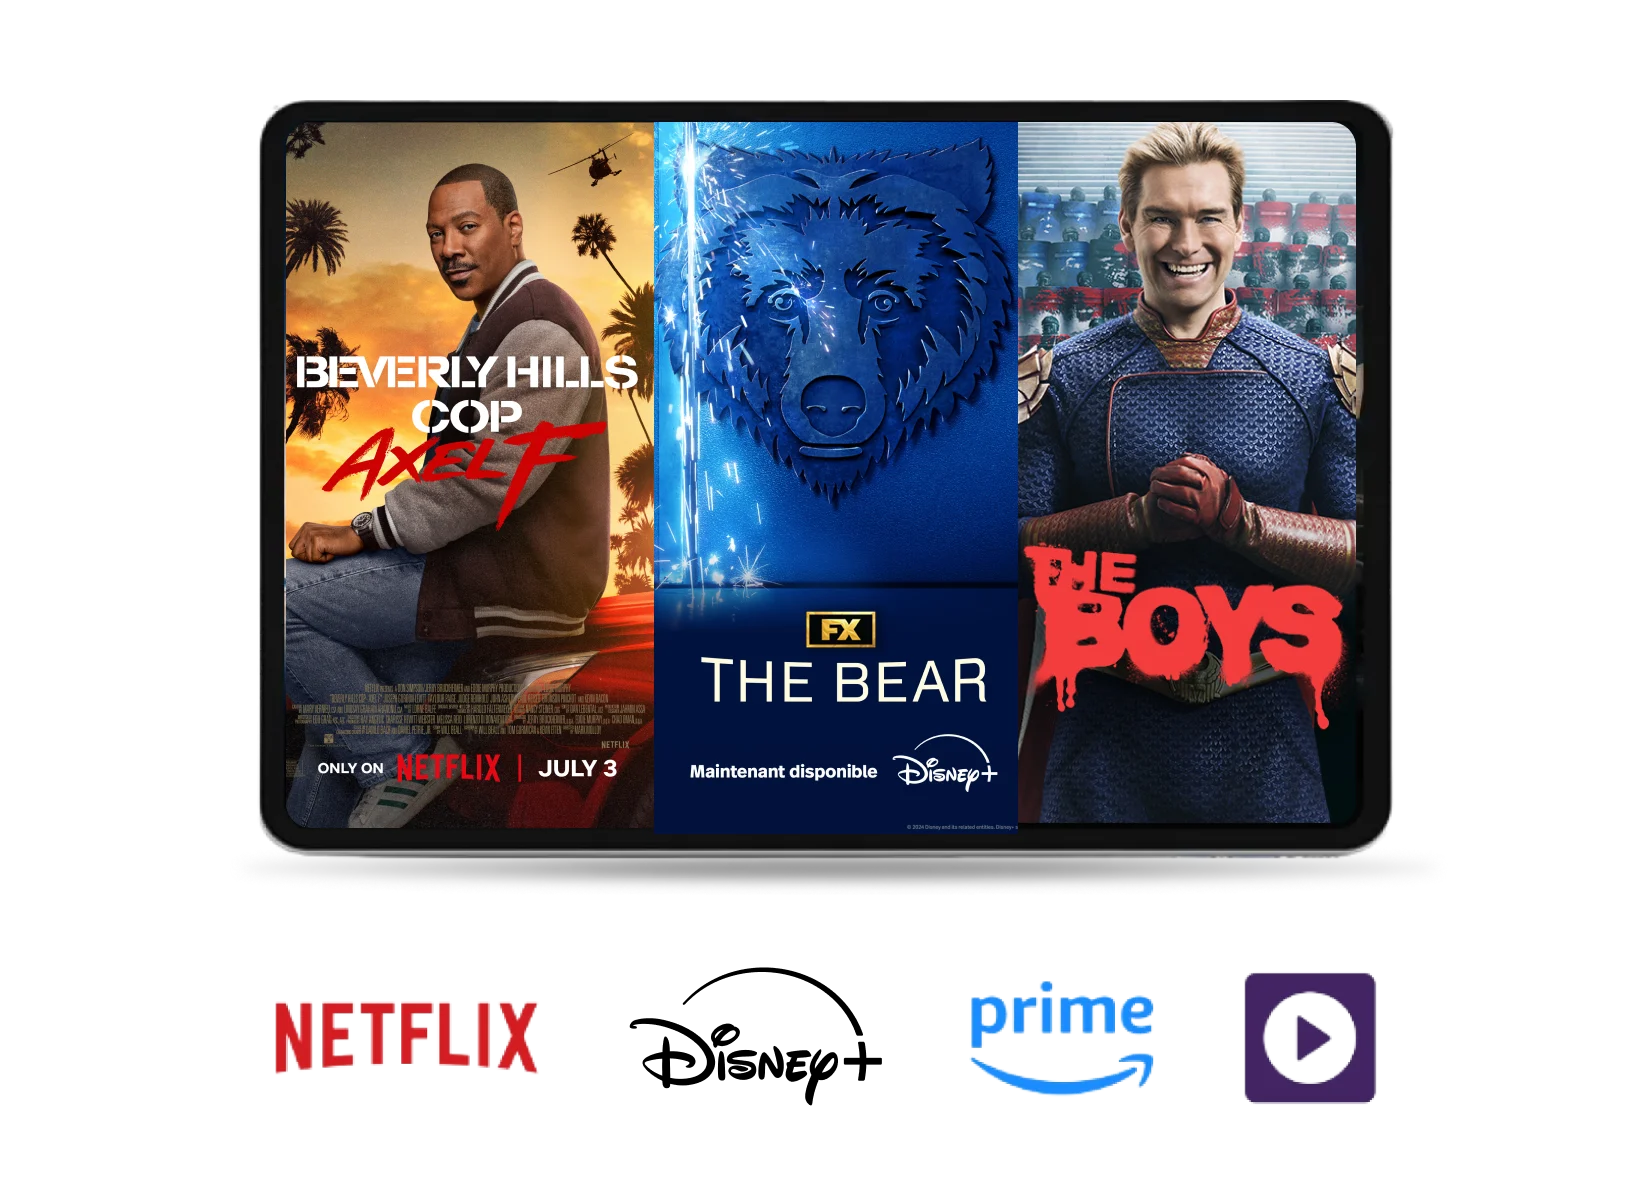 Une tablette affichant trois séries Stream+ populaires ; Le flic de Beverly Hills Axel F sur Netflix, The Bear sur Disney+, The Boys sur Prime.